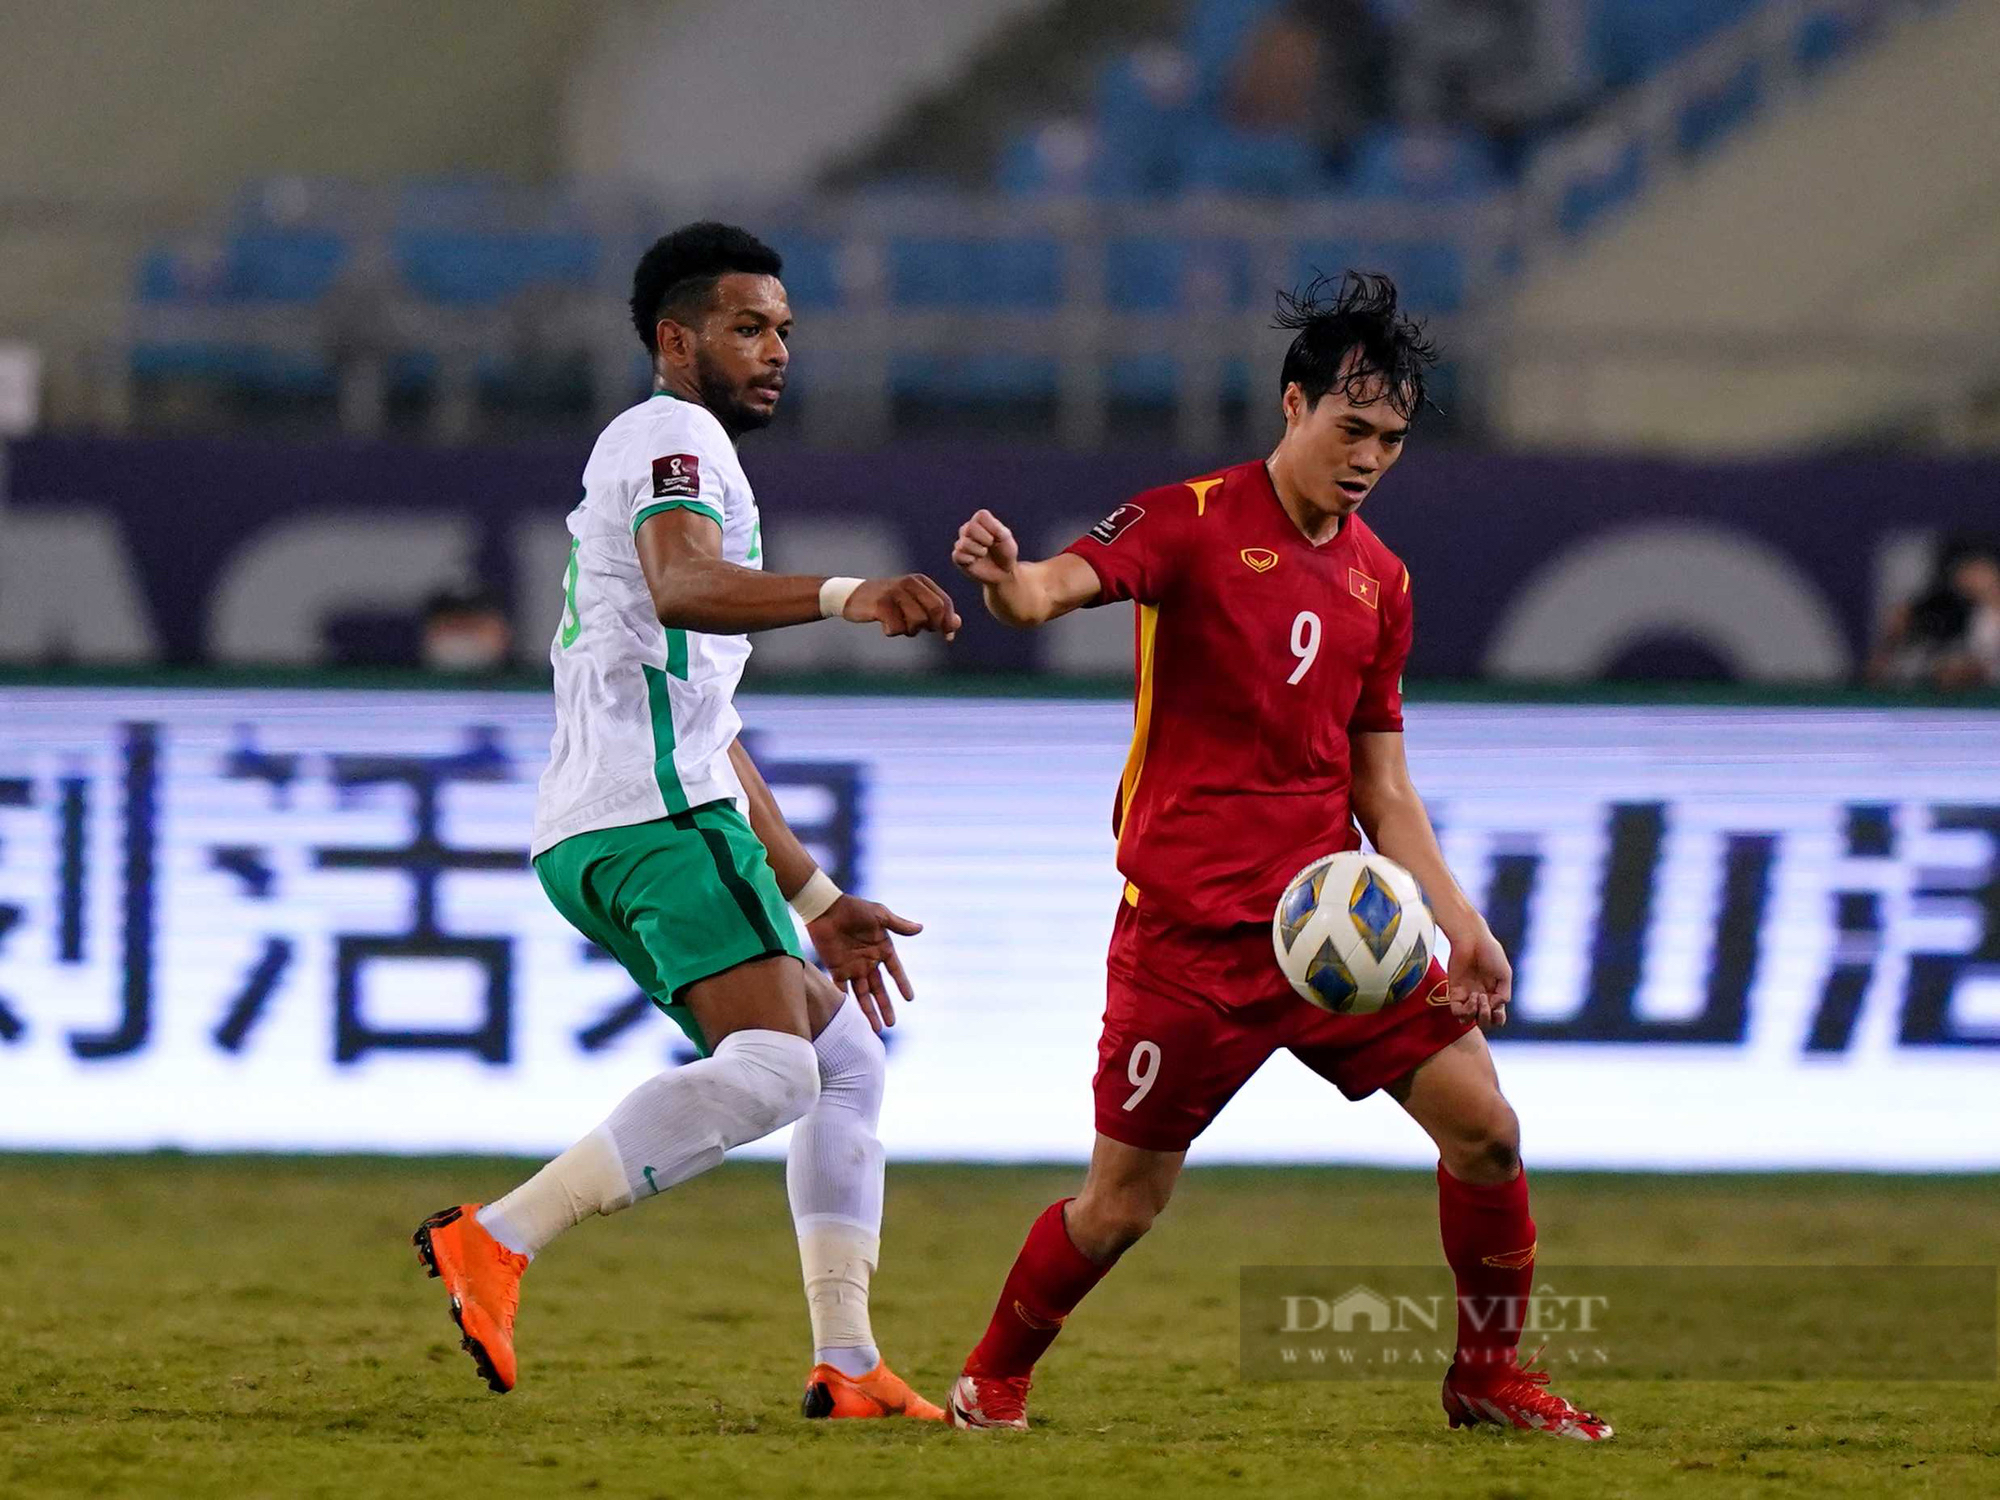 Chùm ảnh tuyển Việt Nam thi đấu lăn xả trước đội tuyển Ả Rập Xê Út - Ảnh 8.